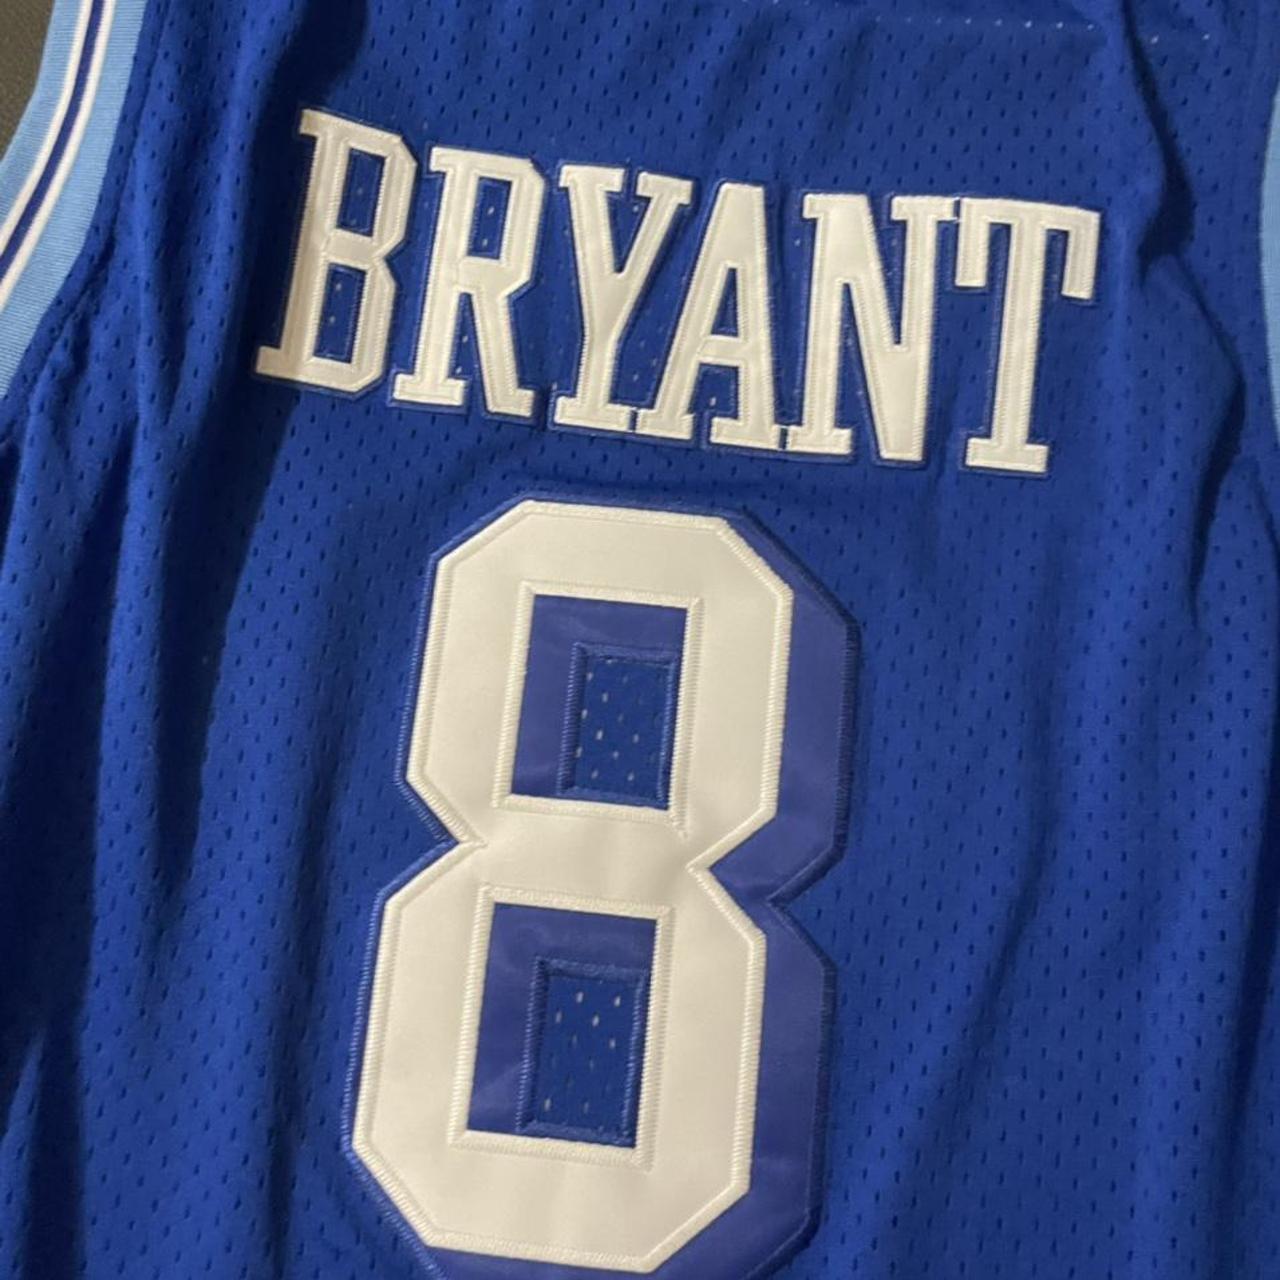 Kobe Bryant Adidas Lakers jersey #ripmamba #lakers - Depop